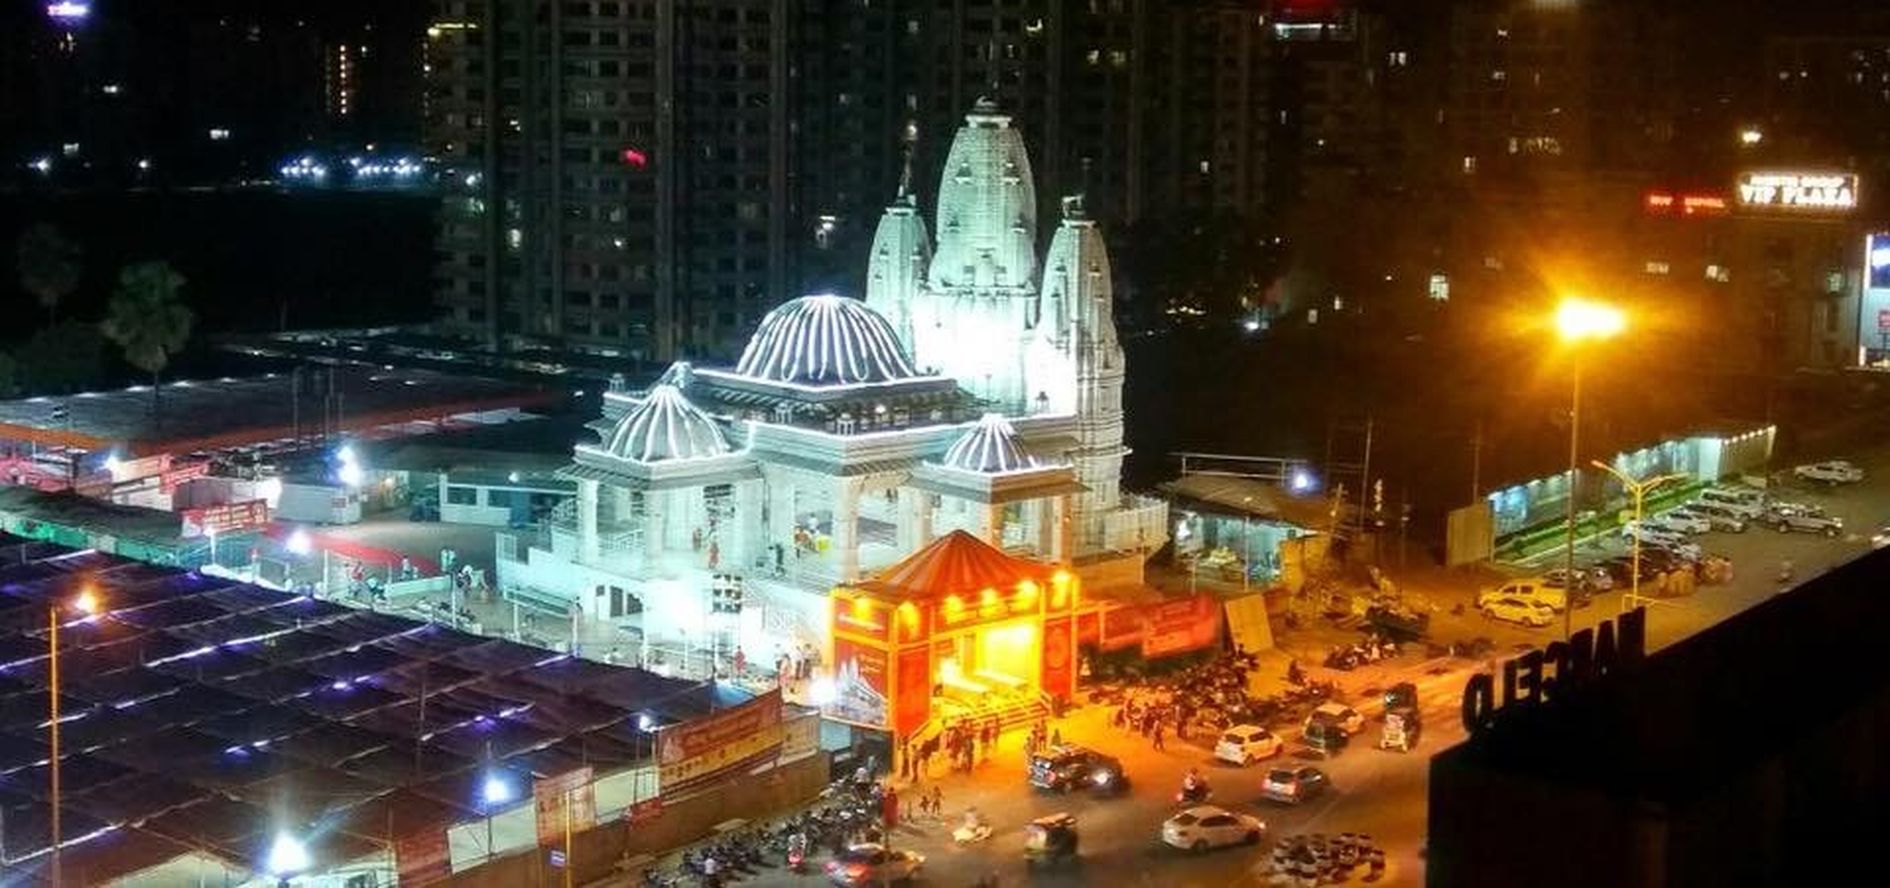 श्रीश्याम मंदिर, सूरतधाम में बहेगी भक्ति सरिता